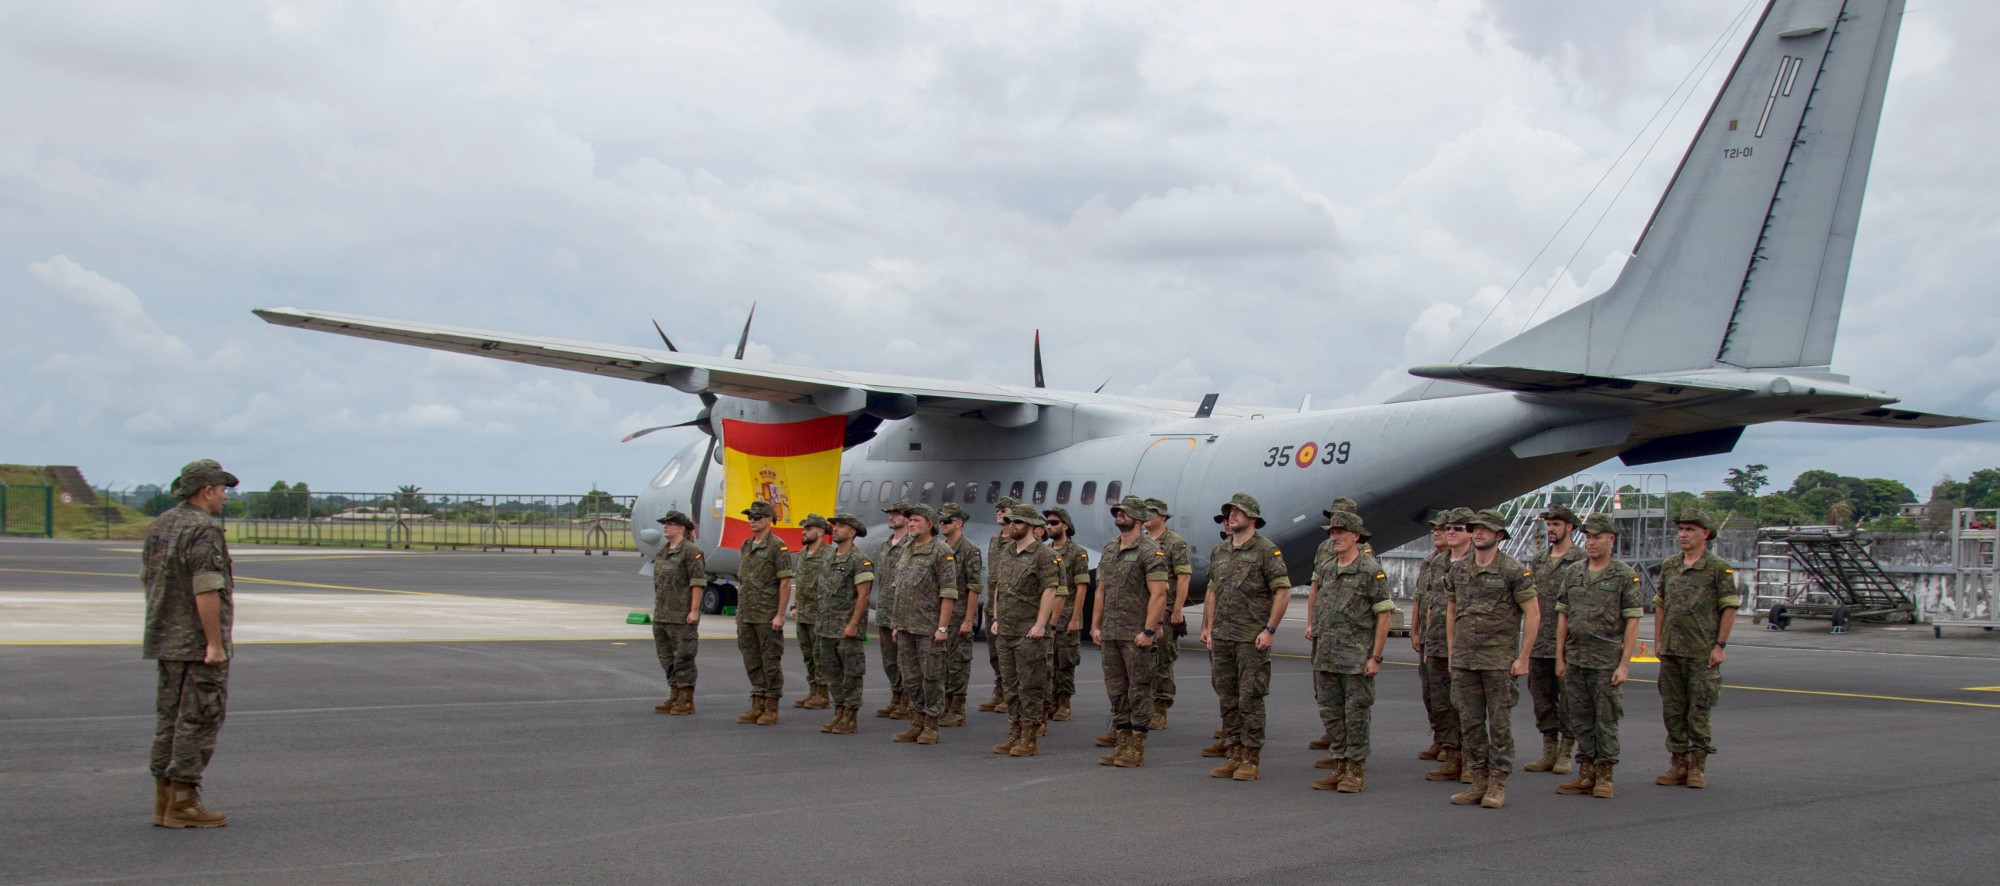 Más de 4.000 horas de vuelo del destacamento “Mamba” en Libreville